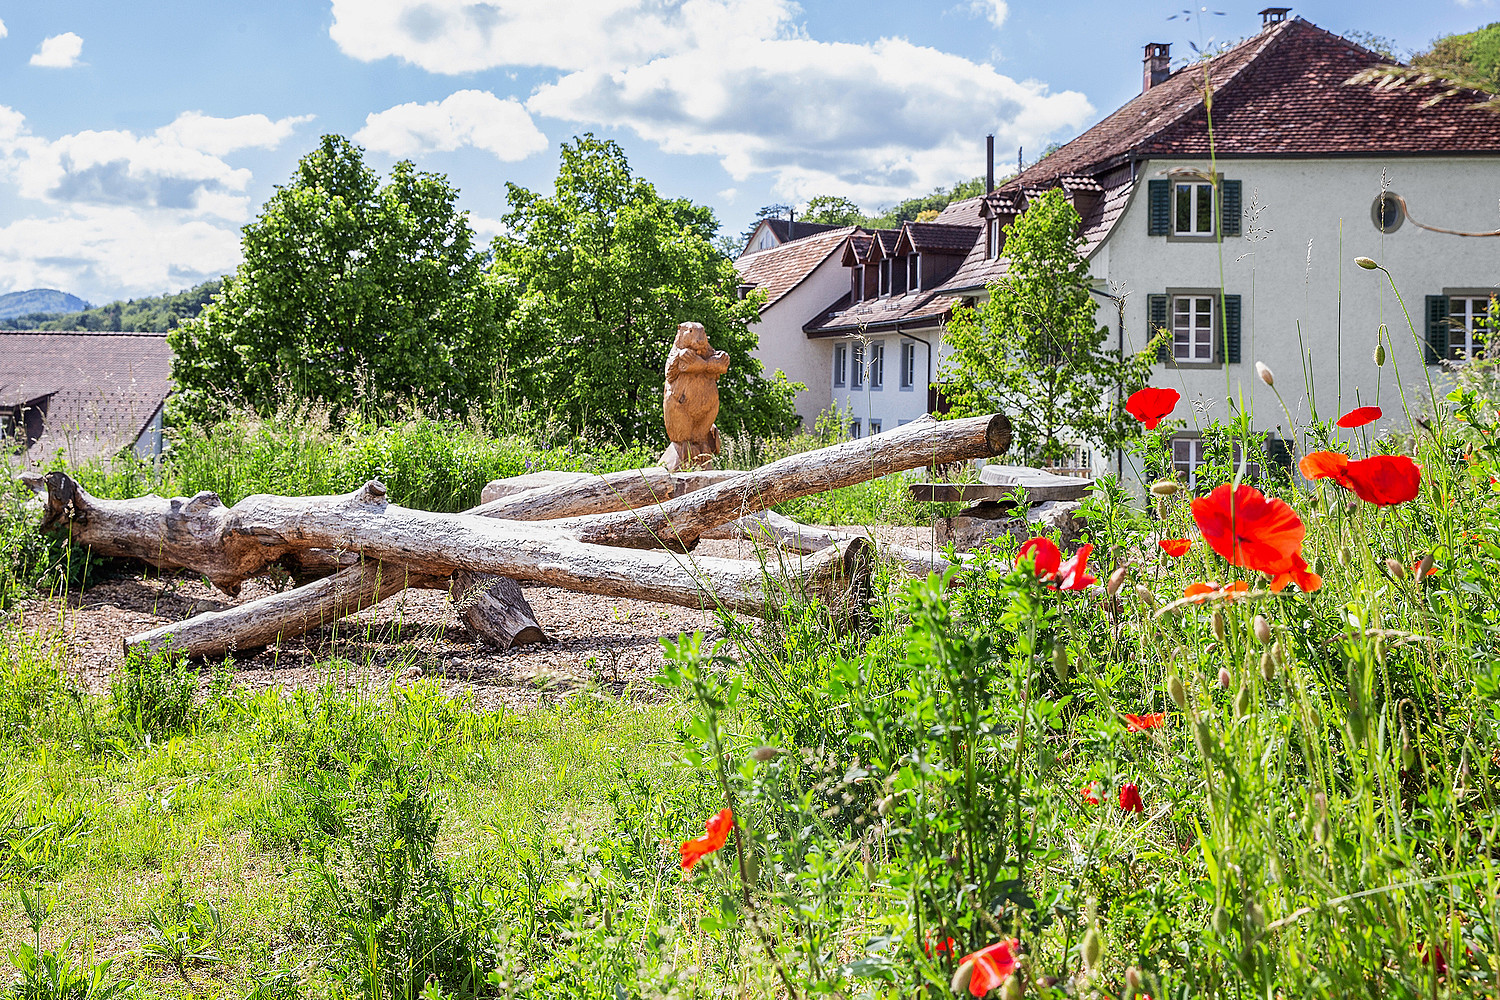 Einfache Massnahme mit grosser Wirkung: In Biberstein (AG) konnte eine Brache inmitten des Dorfes zu einem richtigen Dorfplatz umgestaltet werden. Im Bild die Totholzstämme, die als Klettermöglichkeit für die Kleinen dienen.